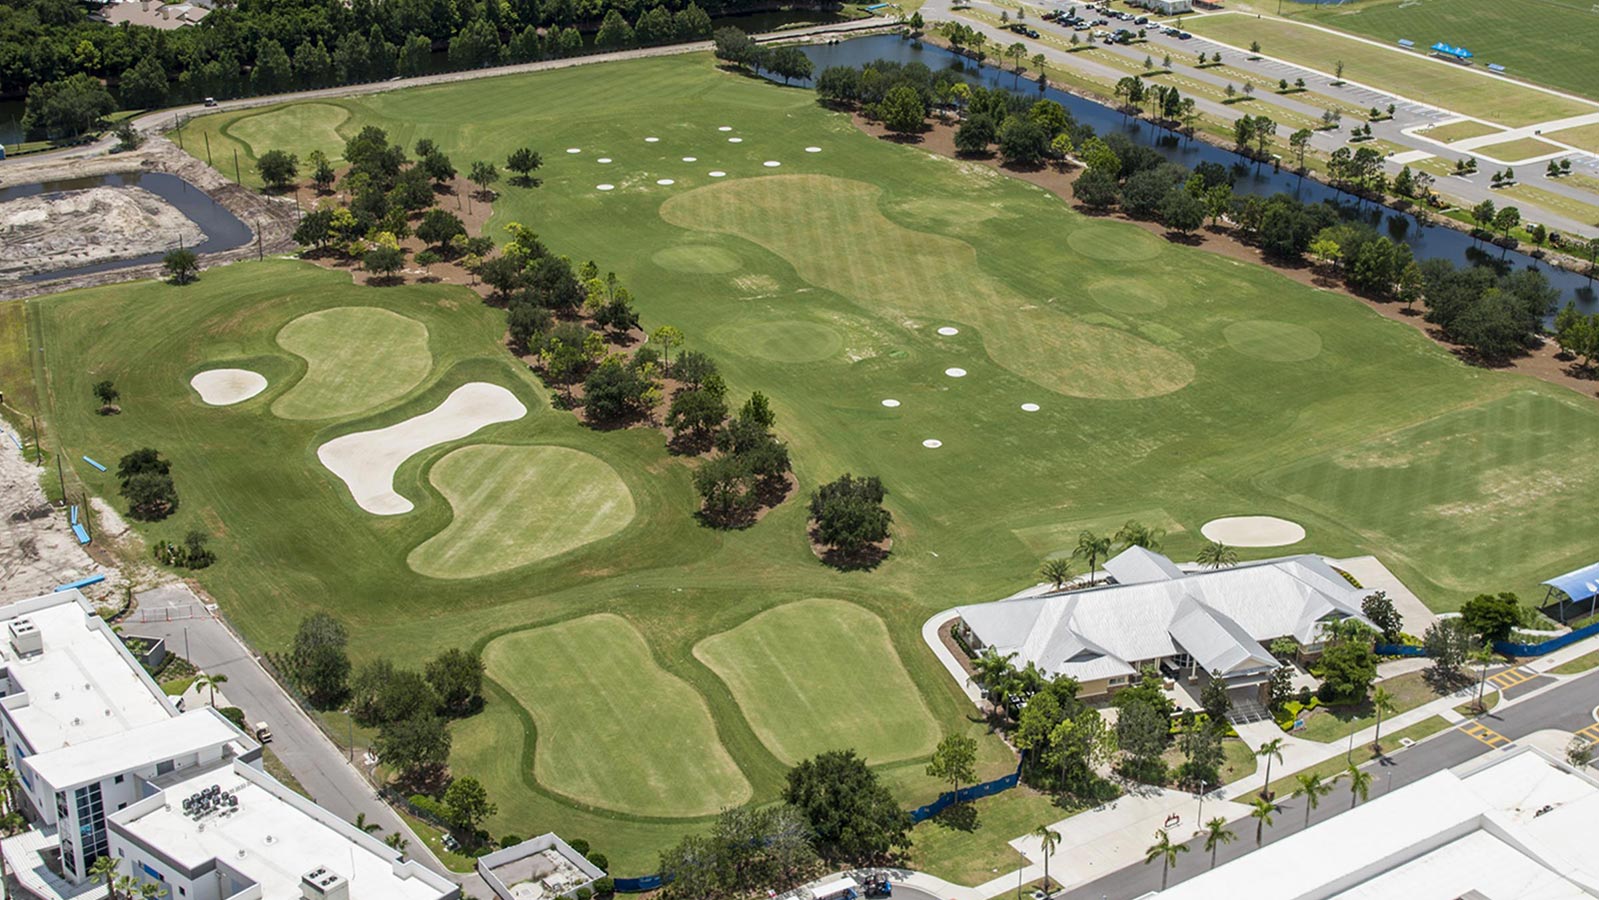 IMG Academy Golf Course